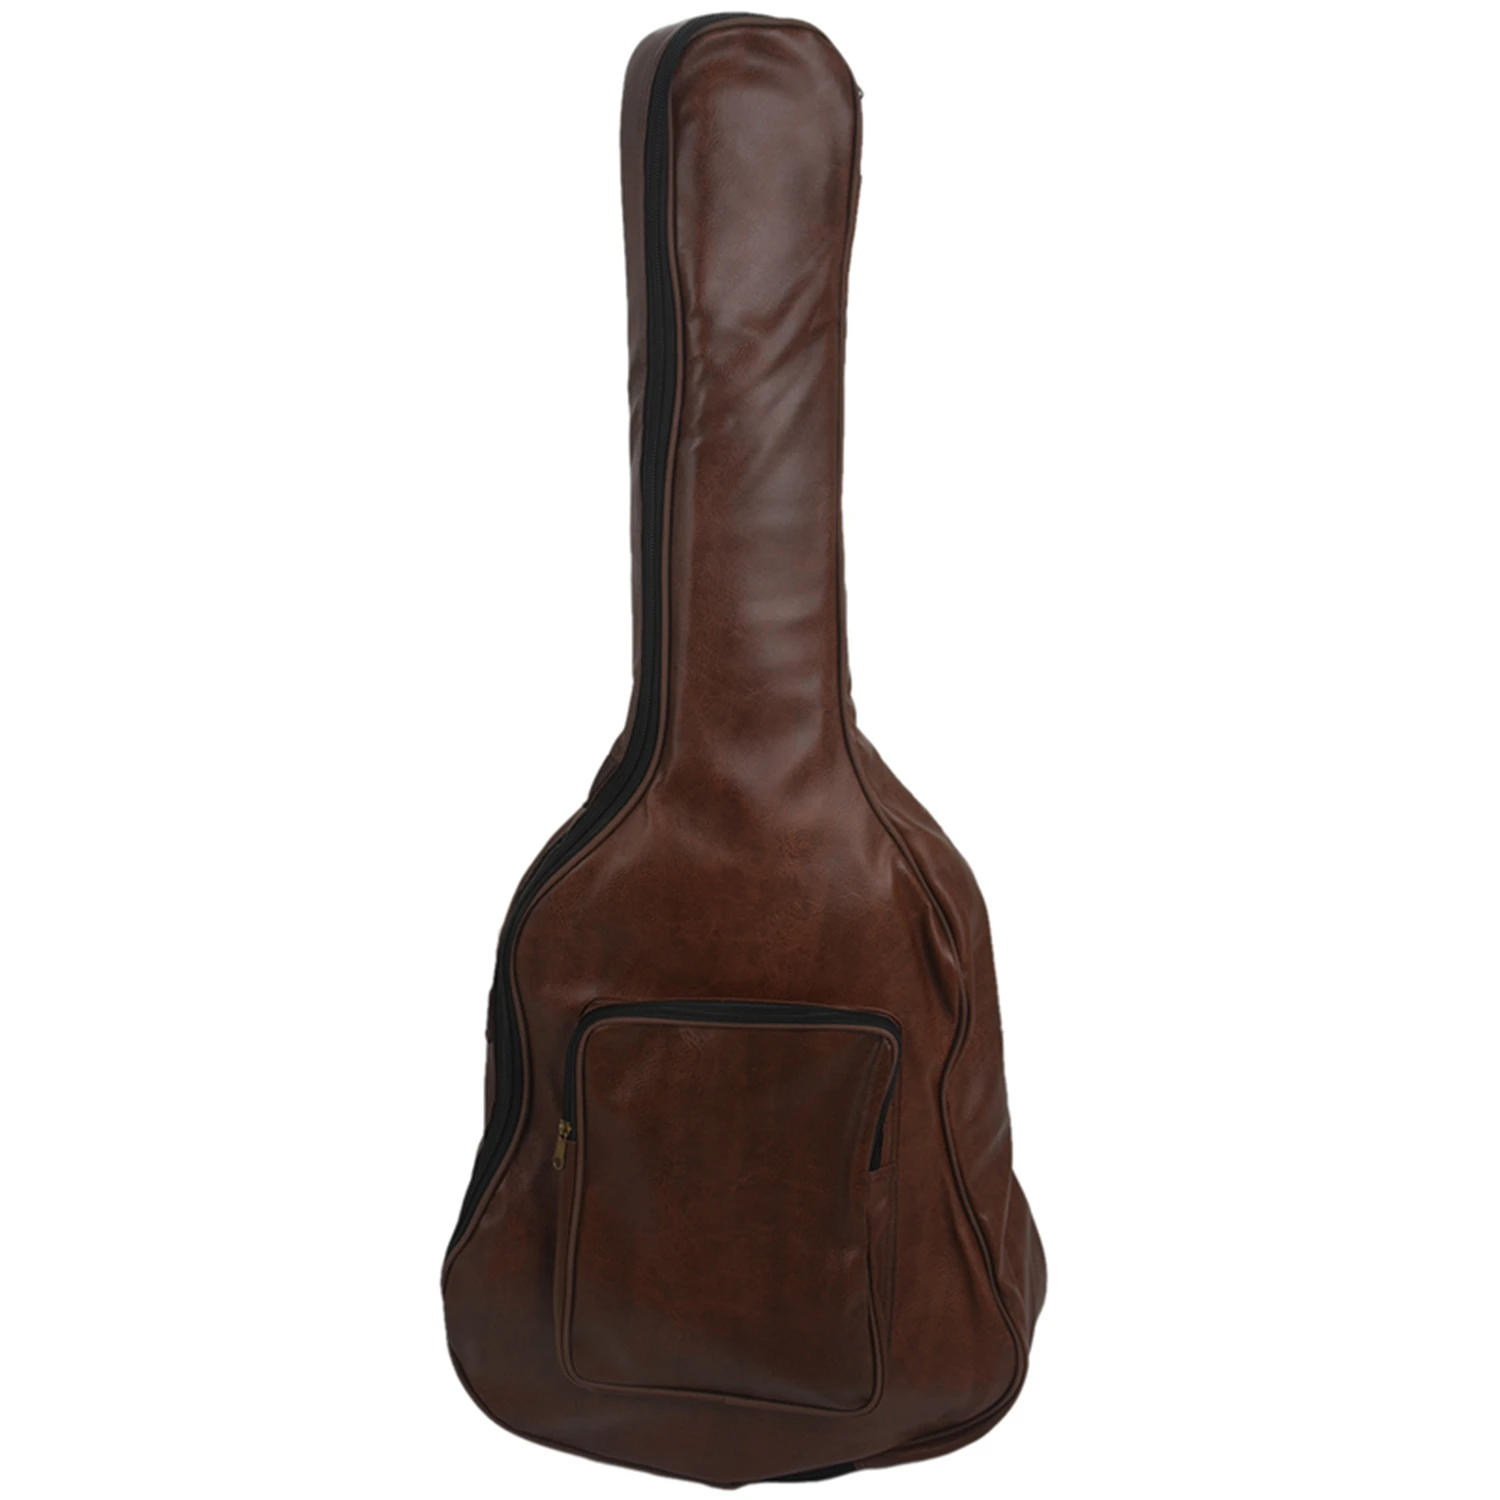 40-дюймовый 41-дюймовый водонепроницаемый рюкзак для гитары из искусственной кожи, утолщенный мягкий чехол для гитары, концертная сумка для 40/41 дюймов коричневого цвета 0